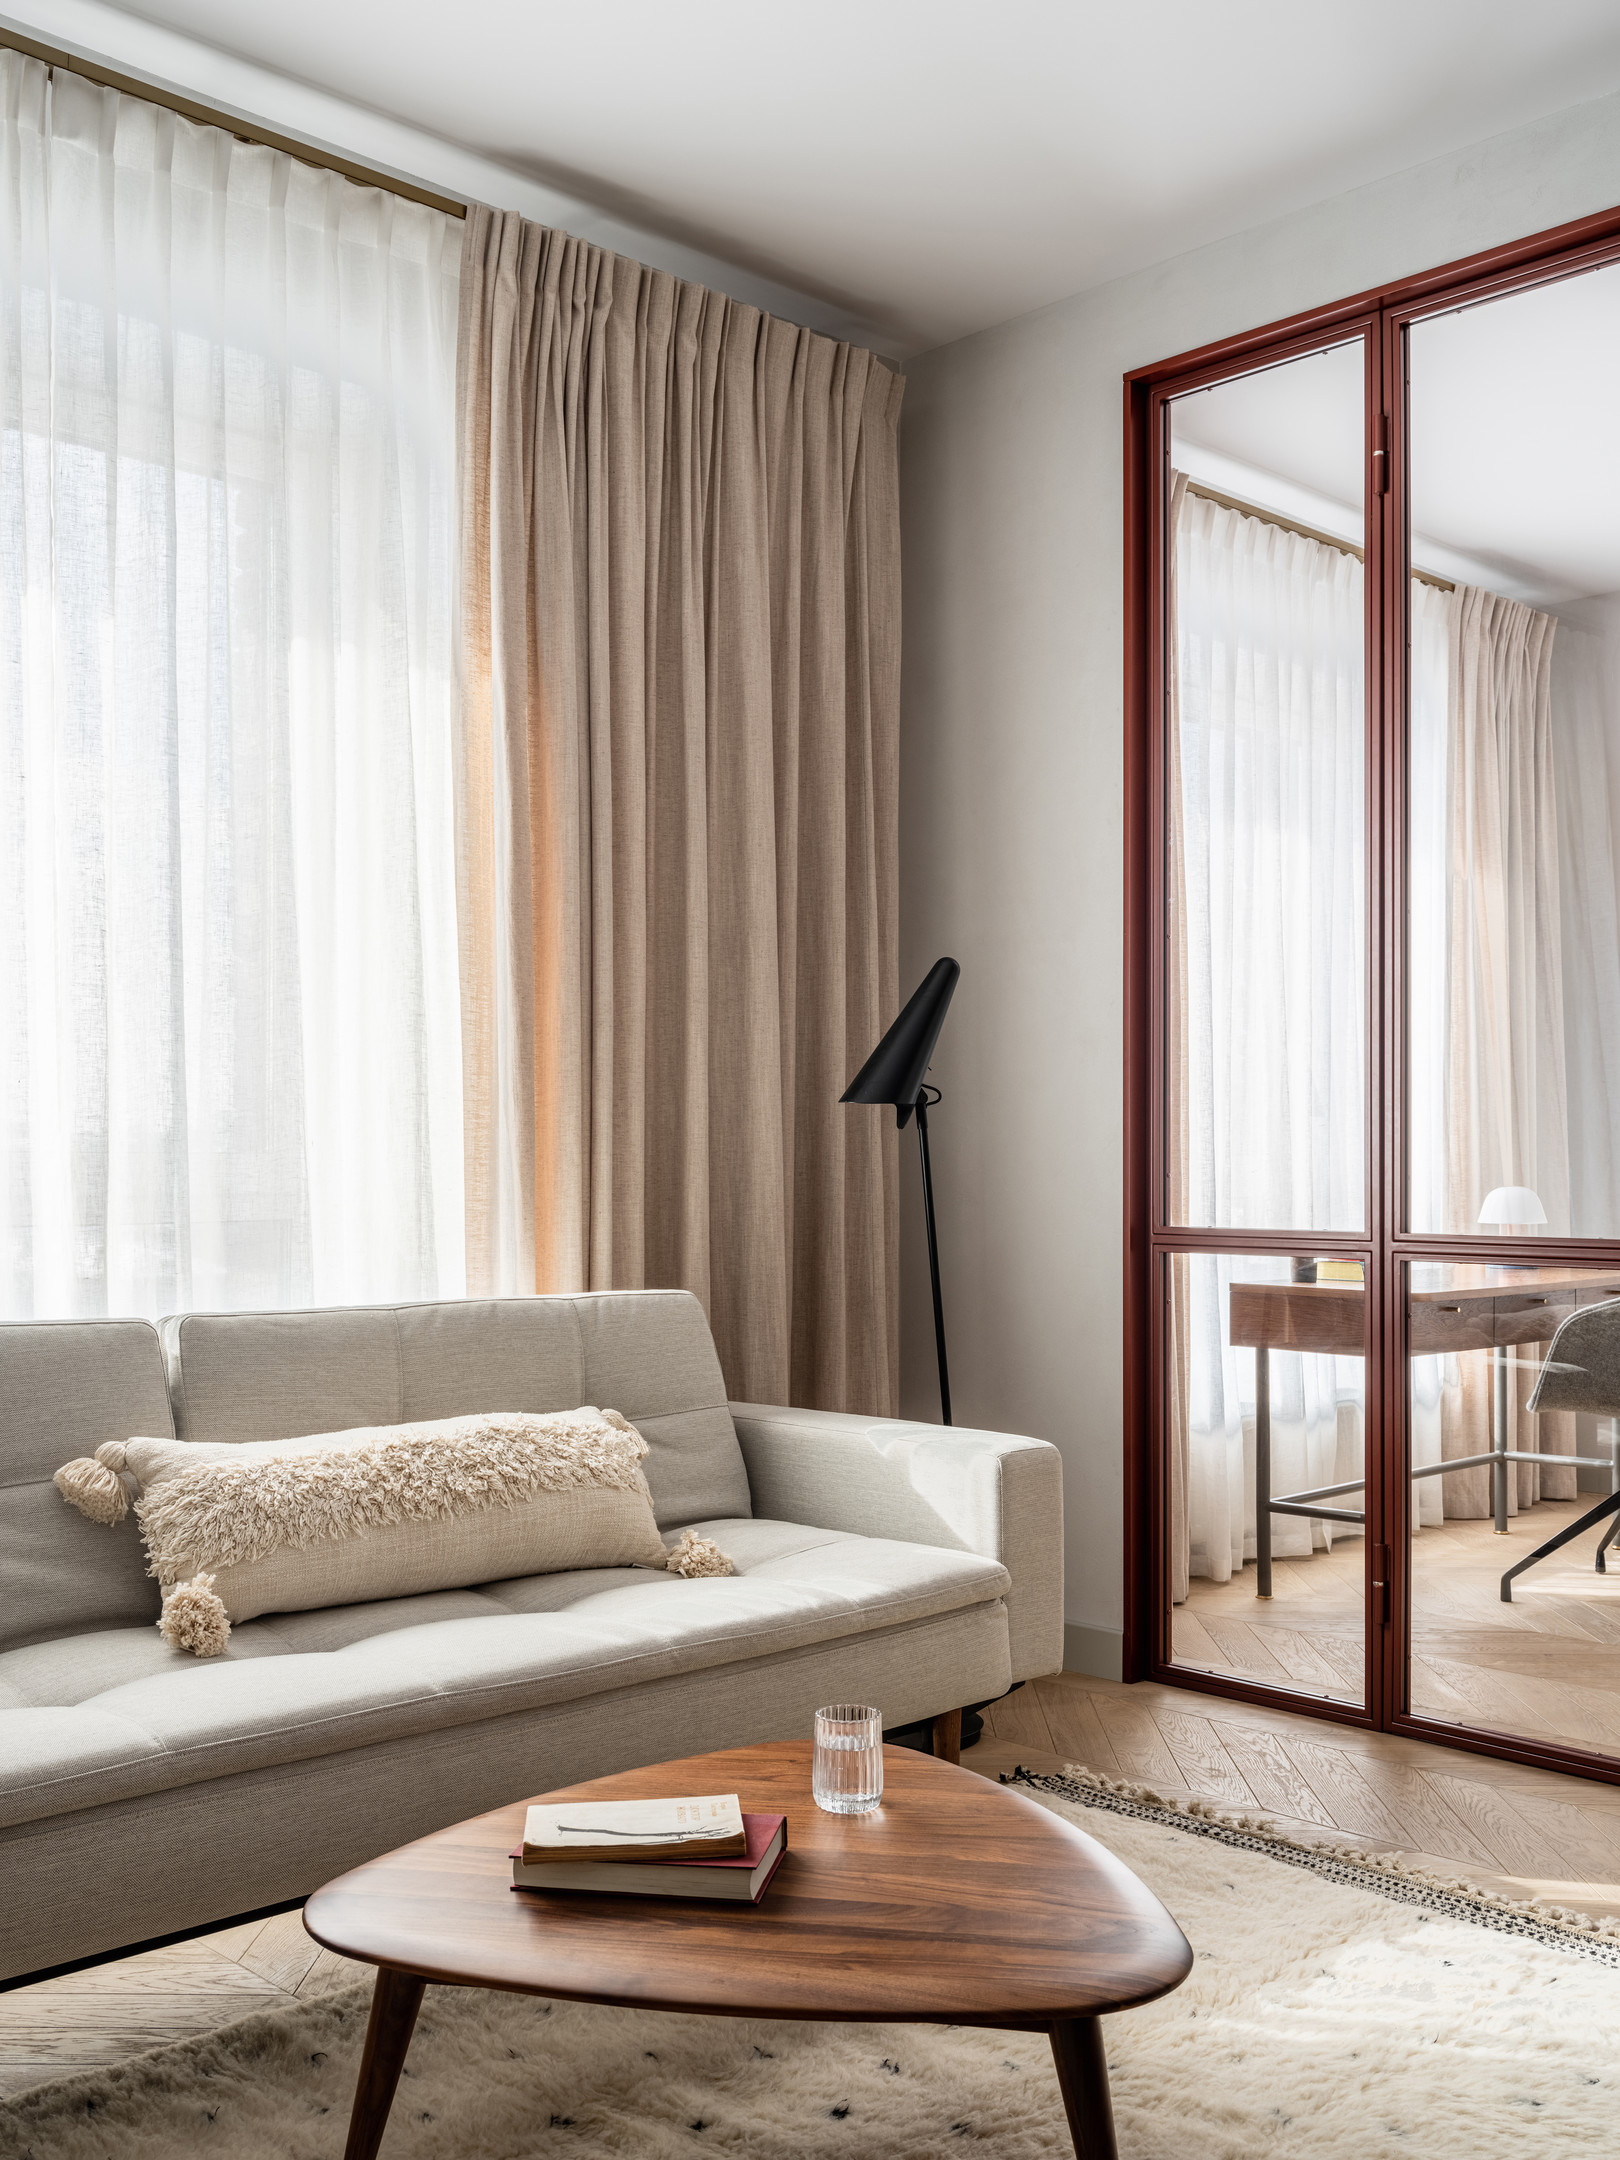 Khi ngắm nhìn cận cảnh nội thất phòng khách, chúng ta sẽ thấy các chất liệu may rèm cửa, vải bọc sofa, gối tựa hay kể cả thảm trải sàn đều được chọn lựa chất lượng nguồn gốc tự nhiên cao cấp, thân thiện với môi trường như lời NTK chia sẻ.